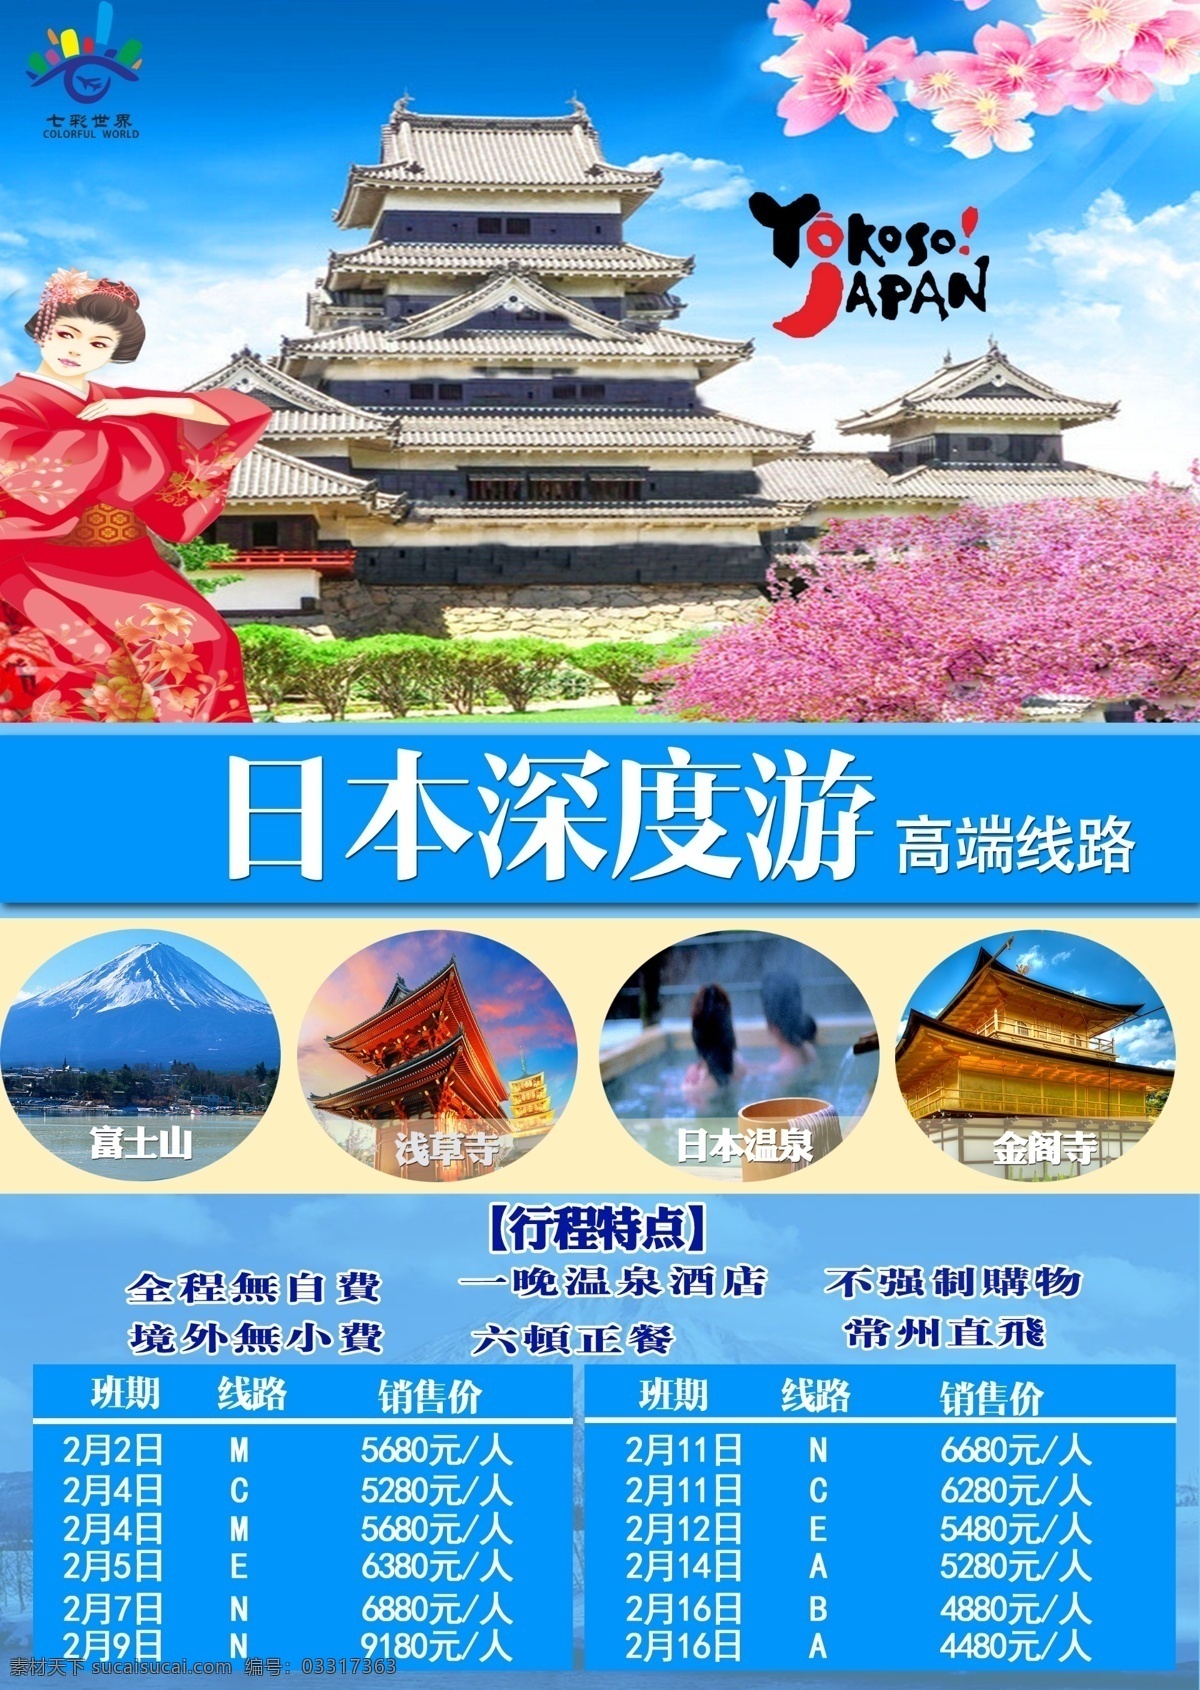 日本旅游 日本印象 带着父母旅行 ps文件 蓝色